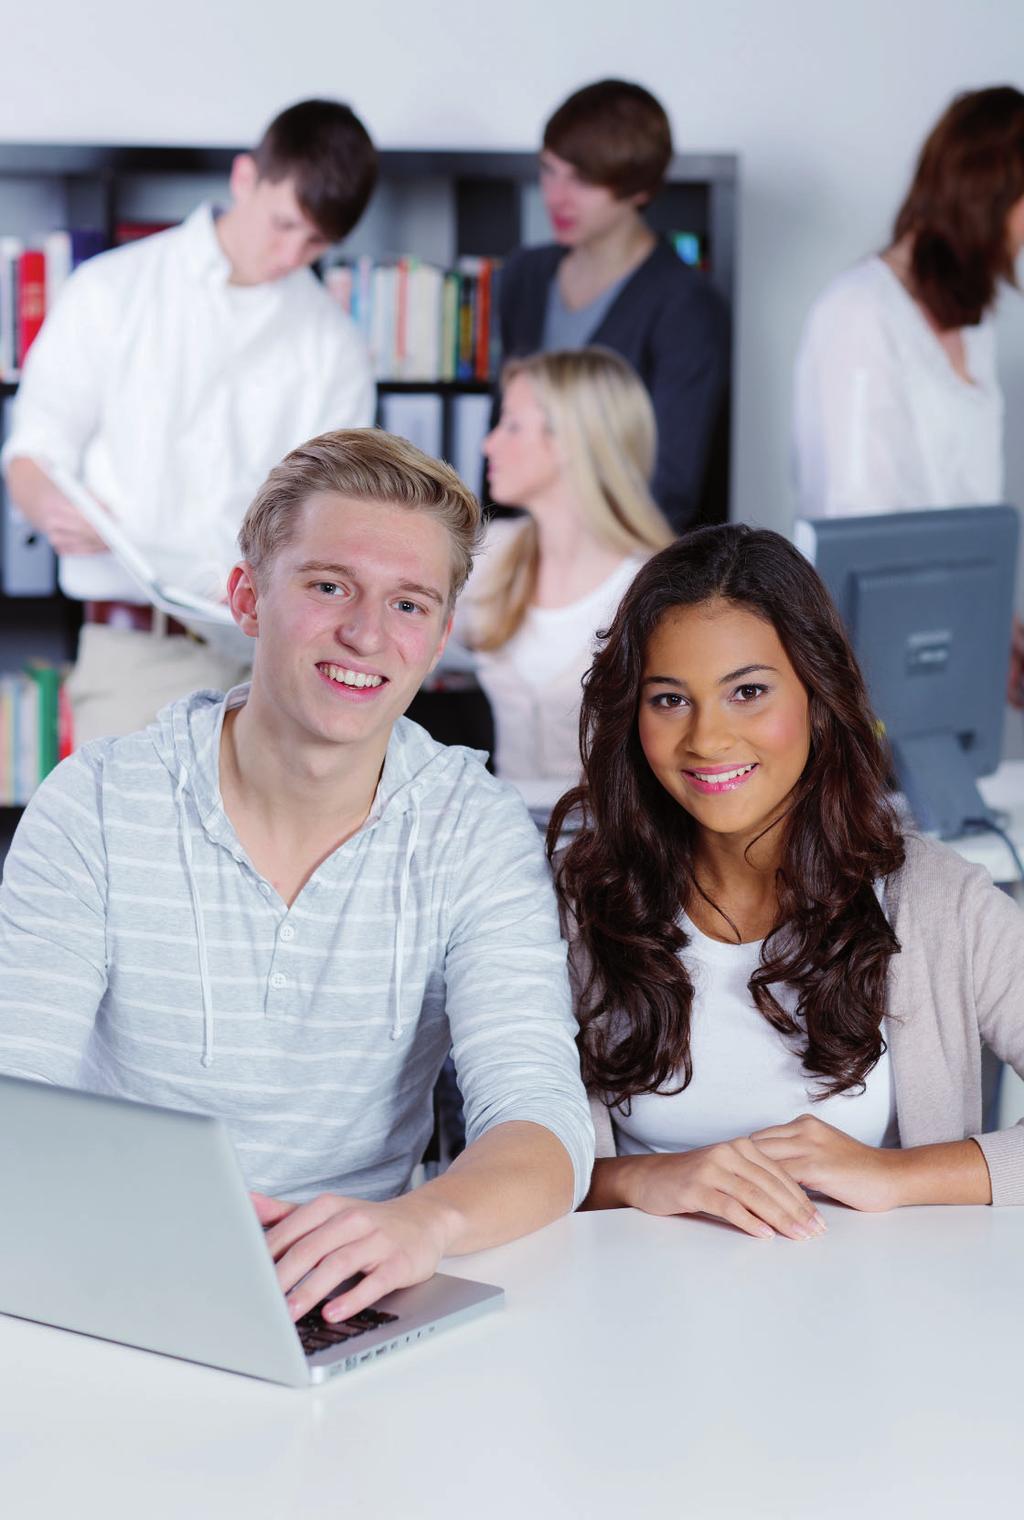 Studienberechtigungen mit fachgebundener Hochschulreife Die fachgebundene Hochschulreife berechtigt in ganz Deutschland zum Studium in Fachrichtungen, die inhaltlich der an der Beruflichen Oberschule